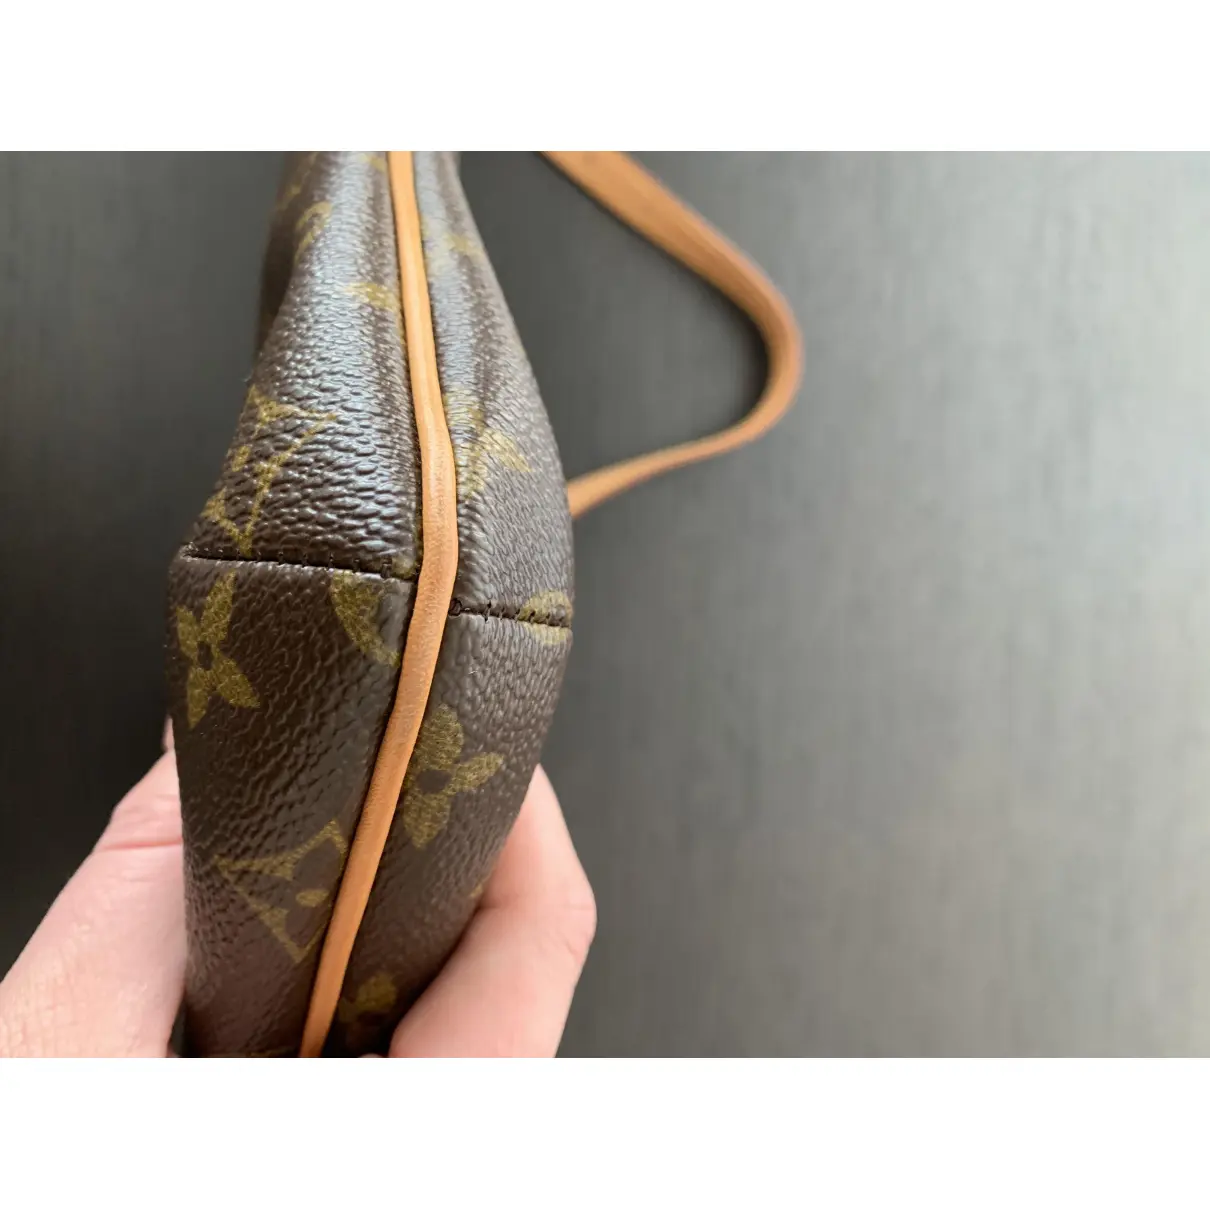 Buy Louis Vuitton Musette Tango cloth handbag online - Vintage